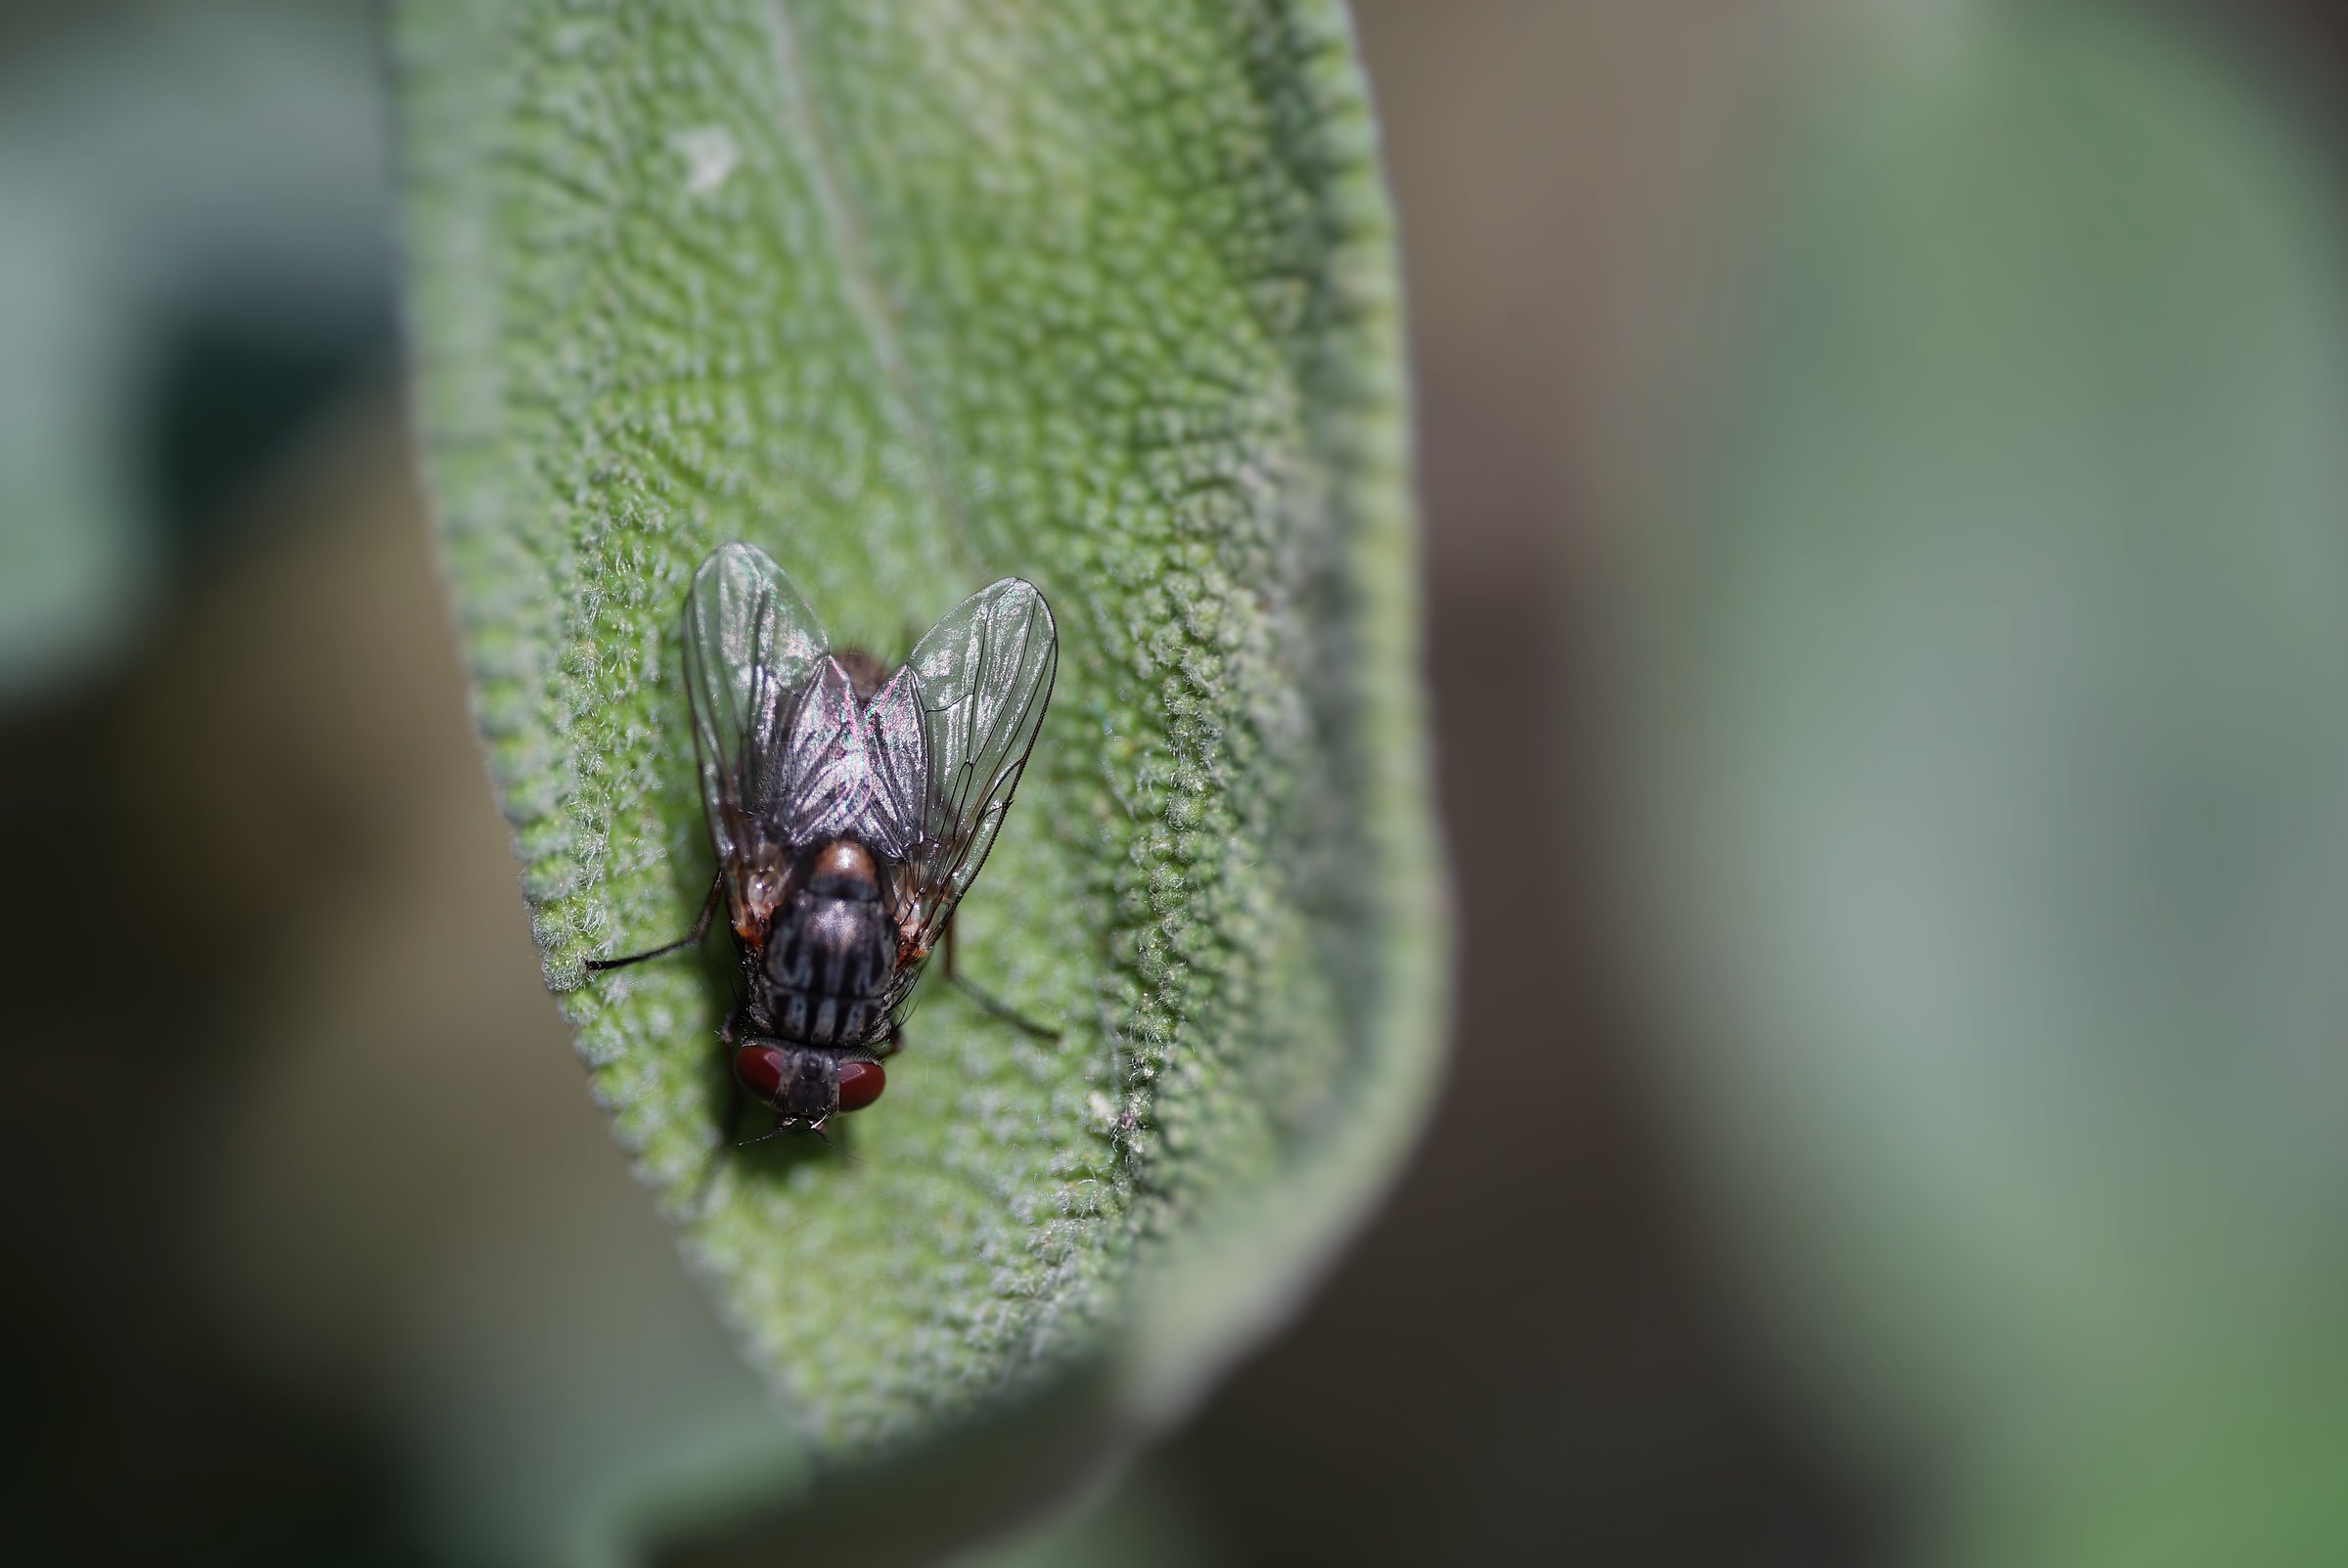 Fly on Salvia leaf...